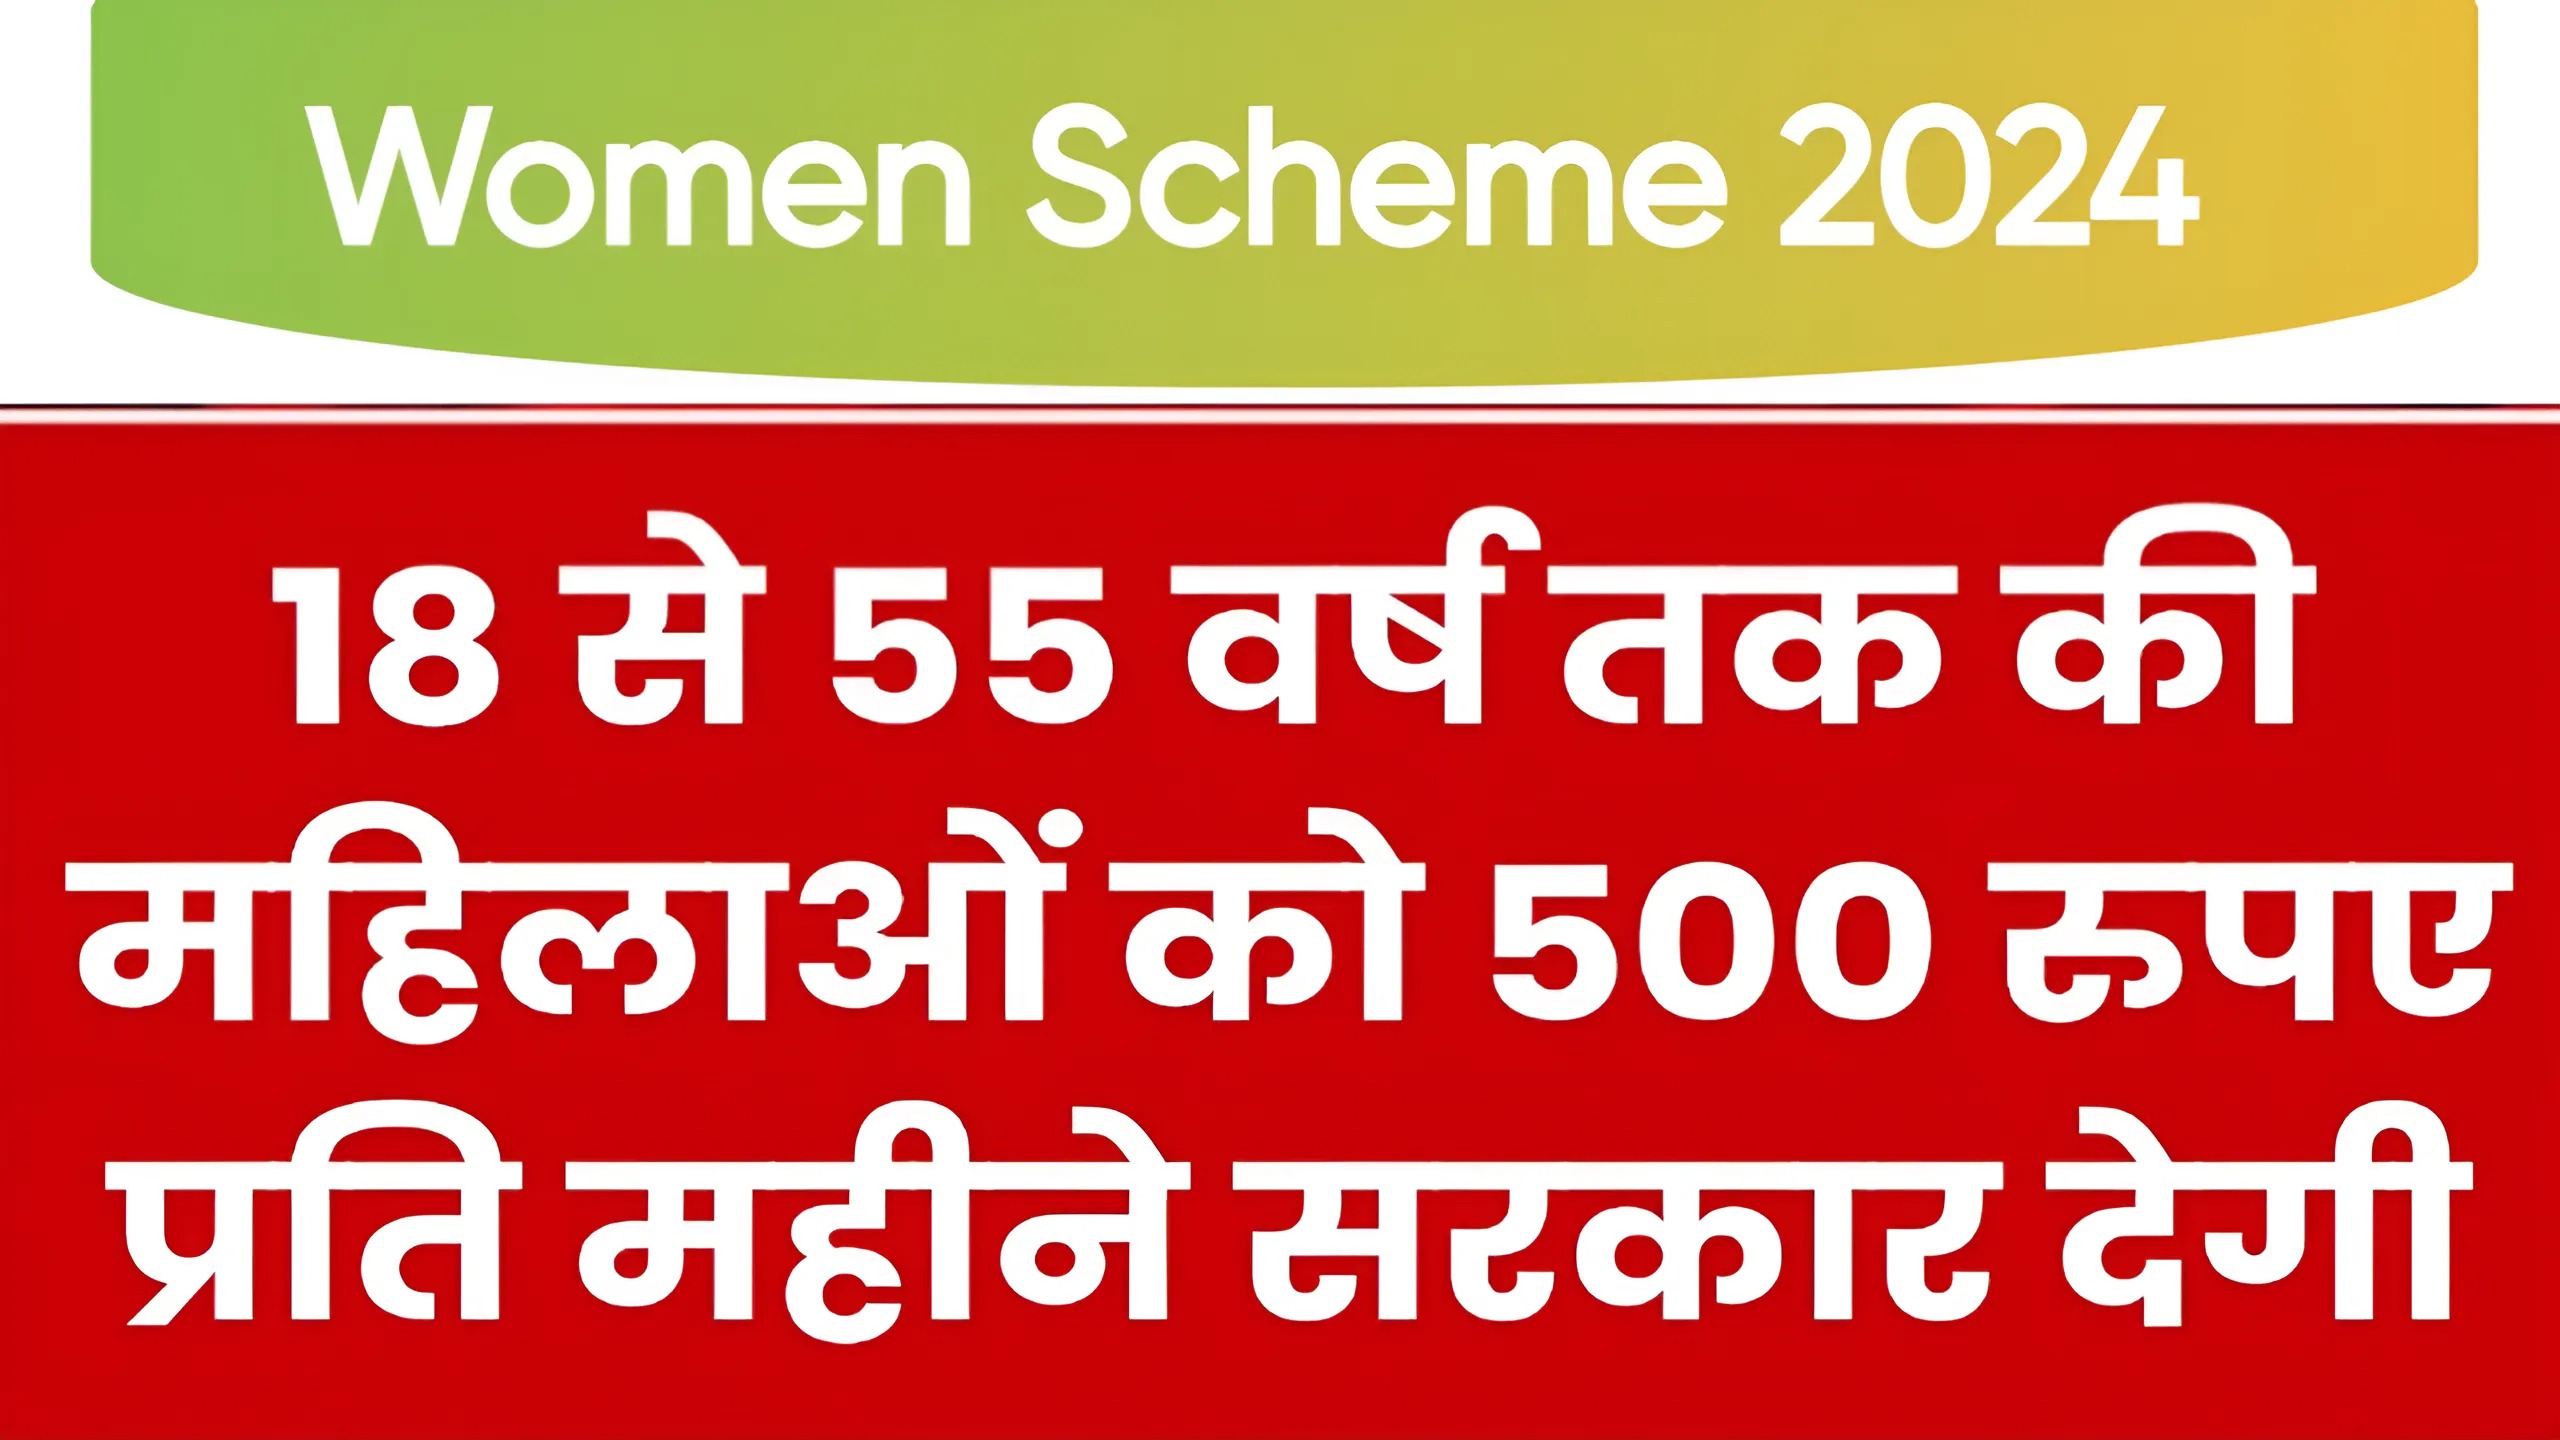 Women Scheme 2024